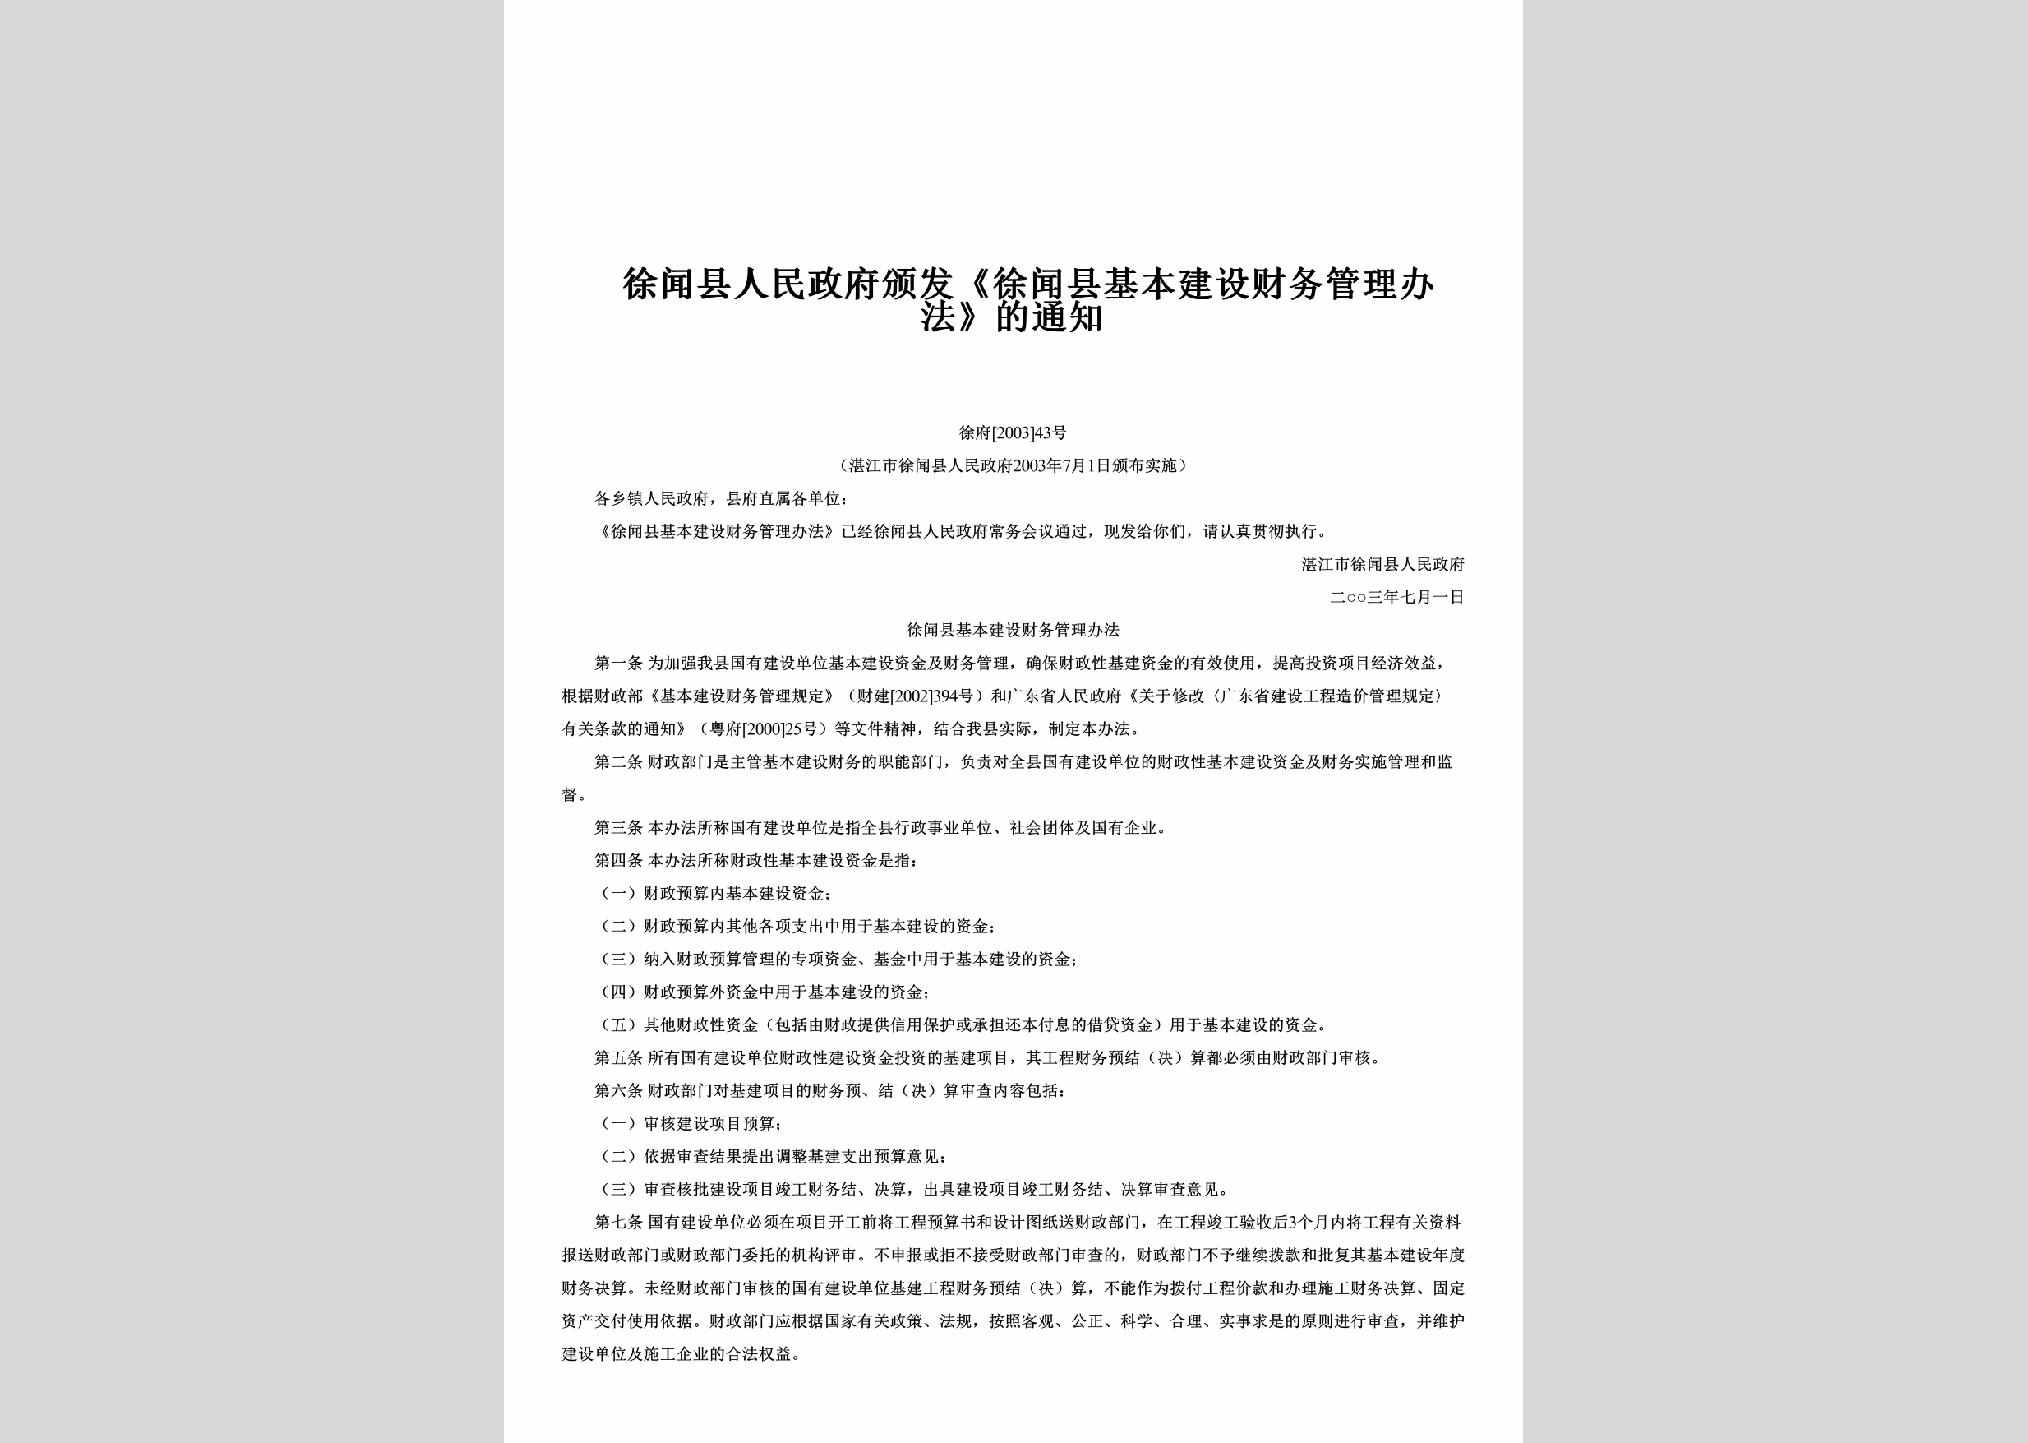 徐府[2003]43号：颁发《徐闻县基本建设财务管理办法》的通知